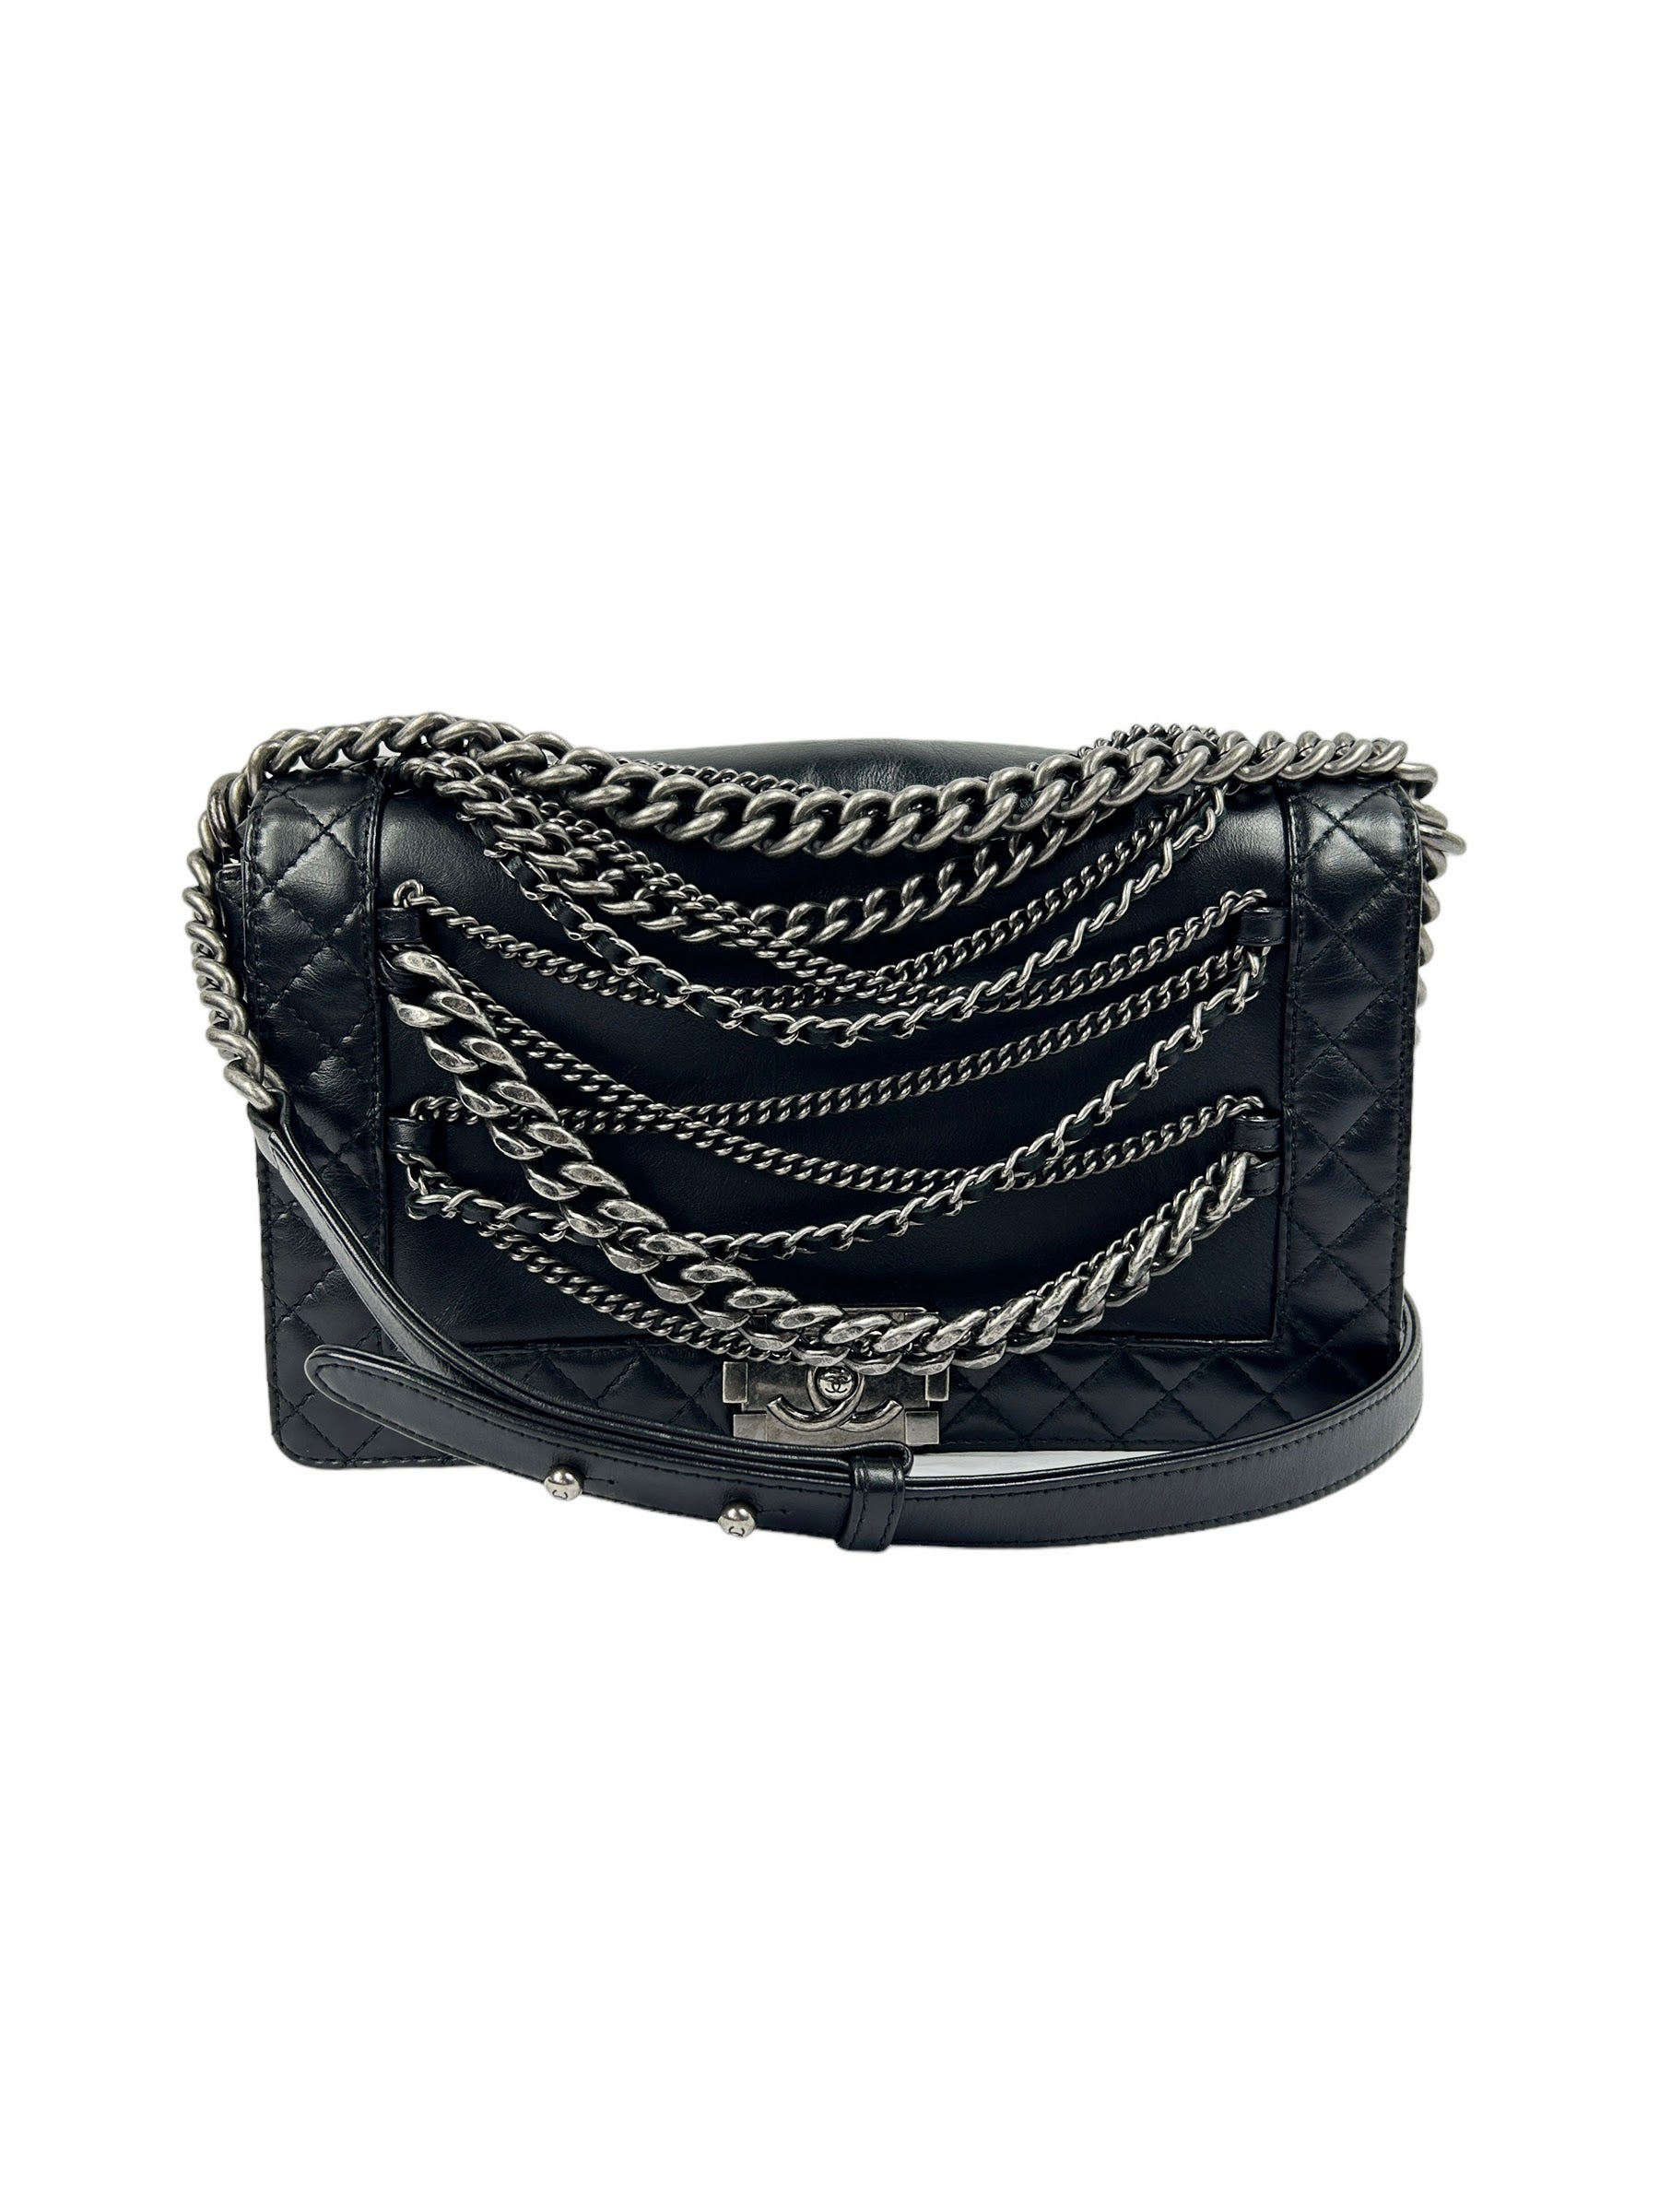 Paris Enchained Medium Calfskin Leather Boy Bag w/RHW